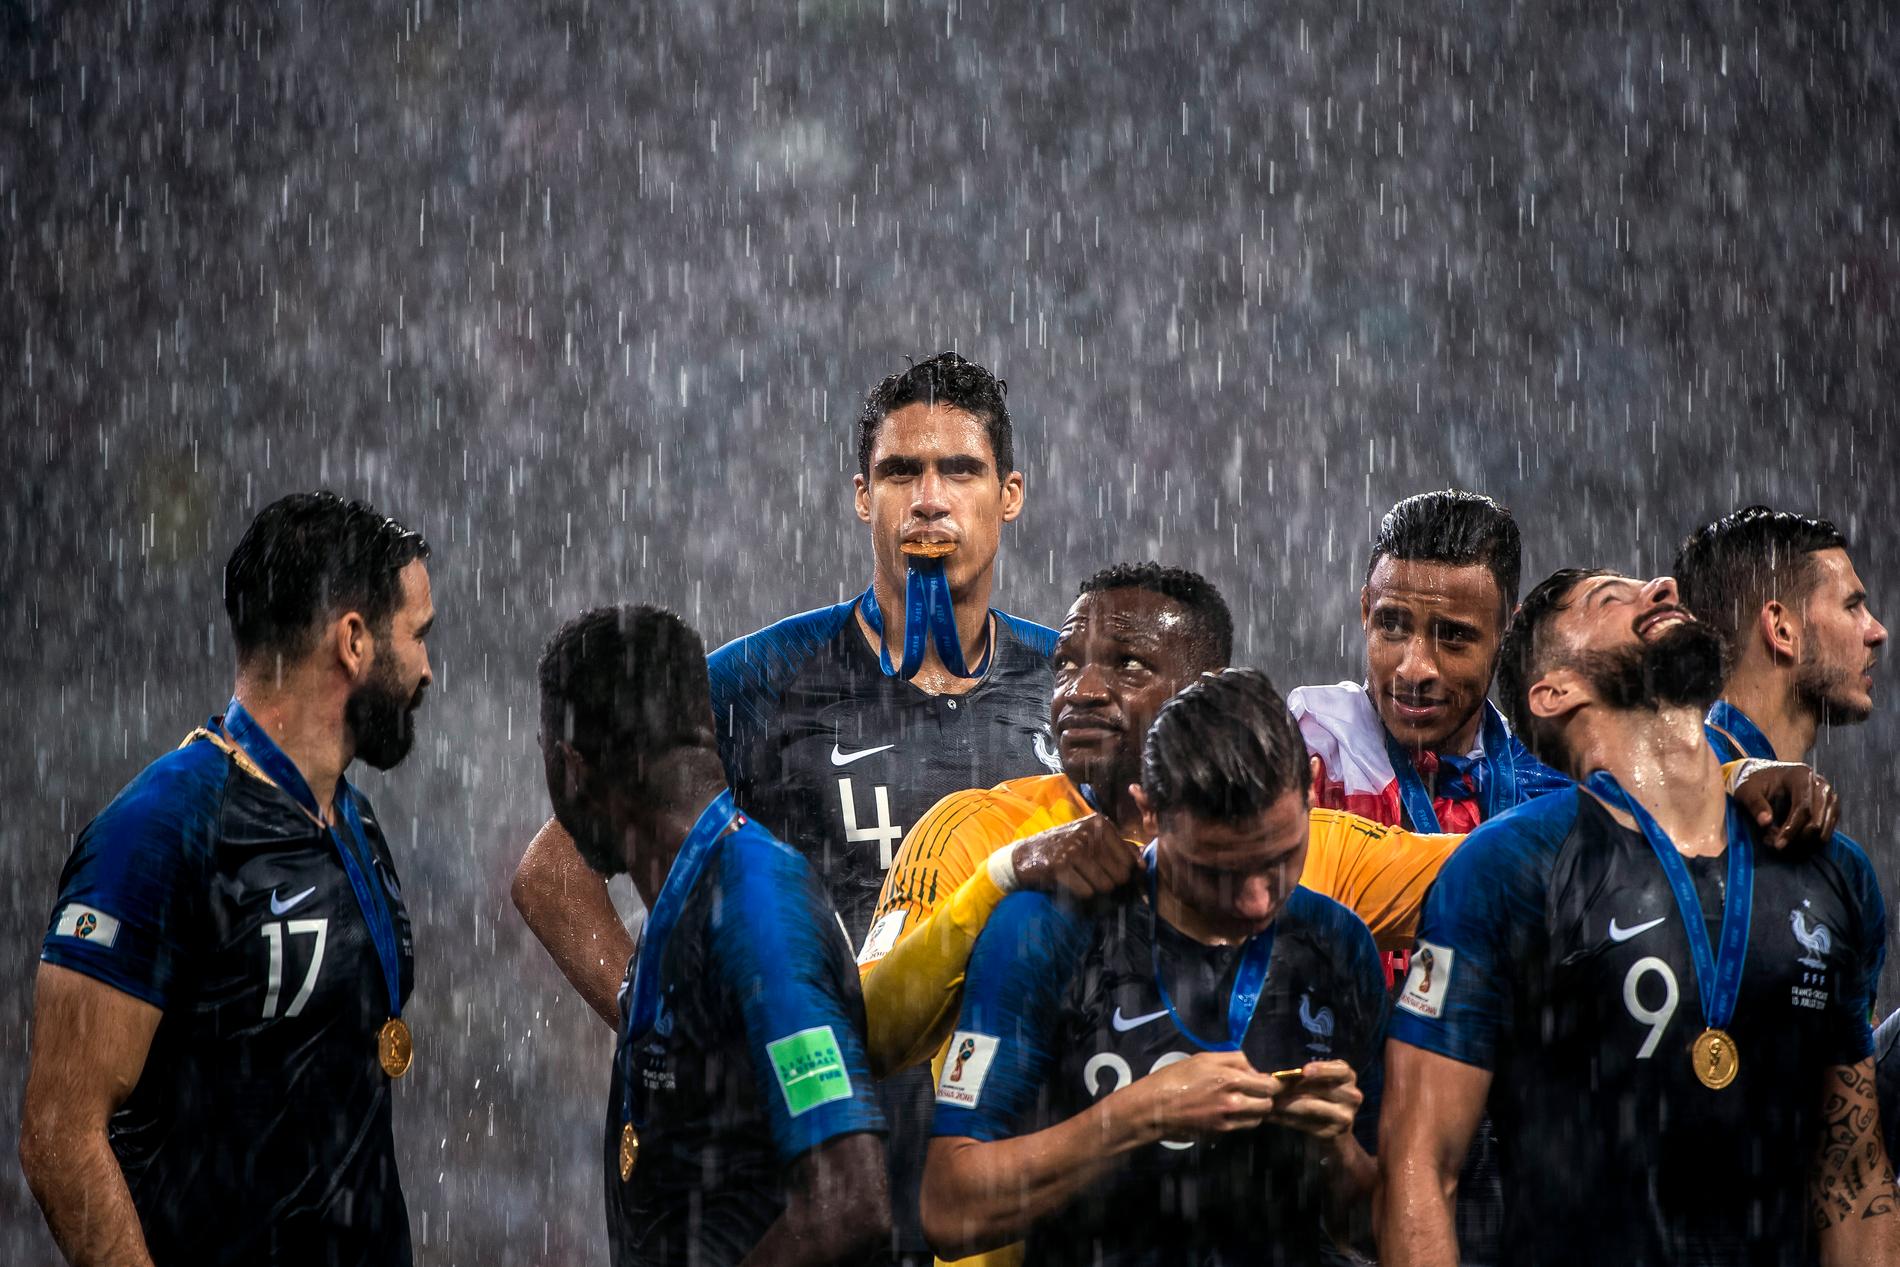 Sportbild feature, 2-a pris: Raphael Varane firar VM-guldet tillsammans med lagkamrater efter att Frankrike besegrat Kroatien i finalen med 4-2 vid fotbolls-VM i Ryssland.